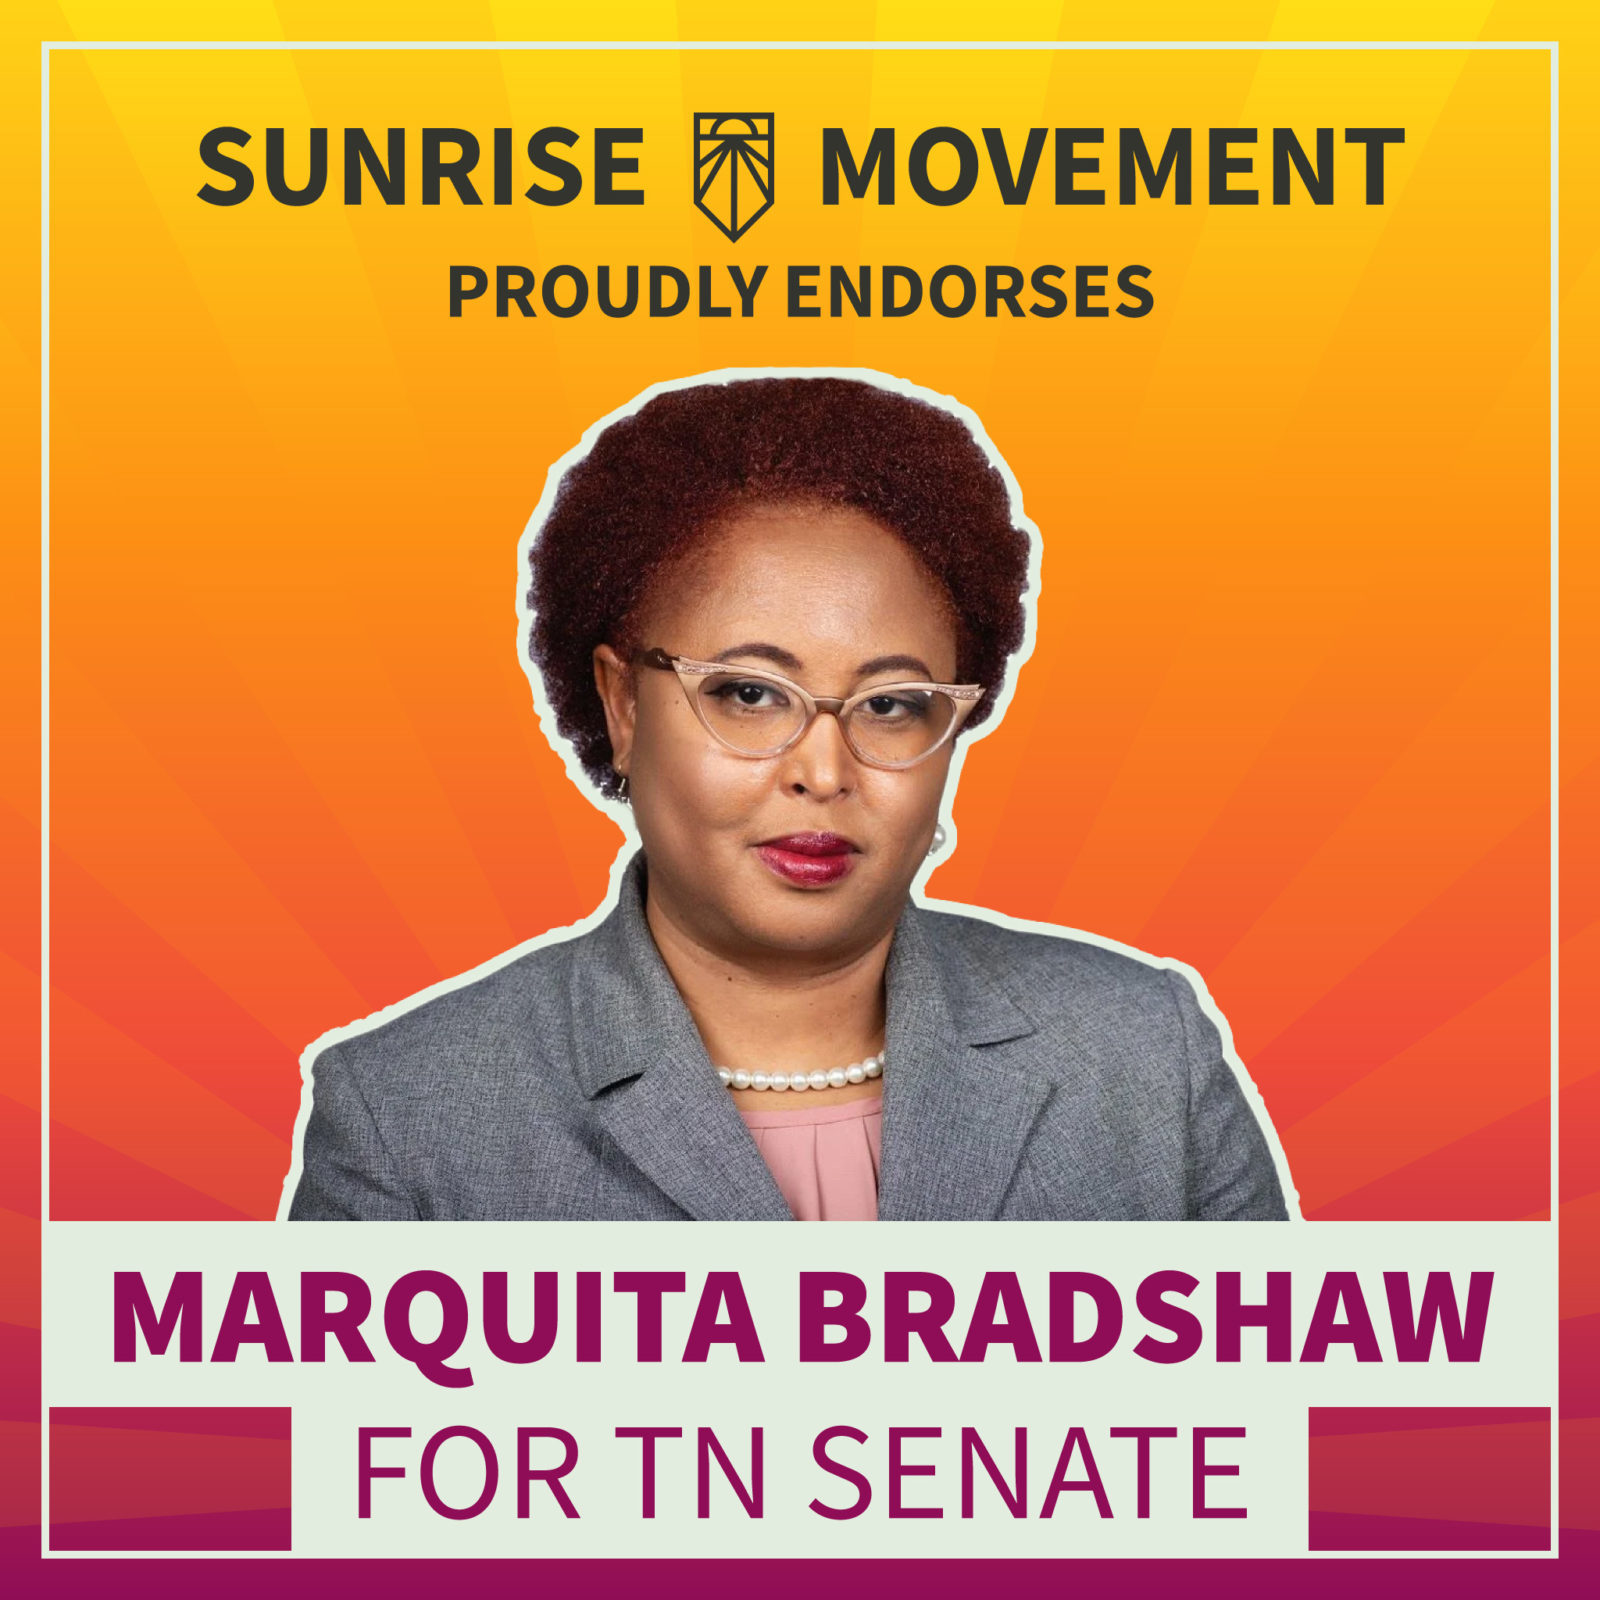 Una foto de Marquita Bradshaw con texto: Sunrise Movement respalda con orgullo a Marquita Bradshaw para el Senado de TN.